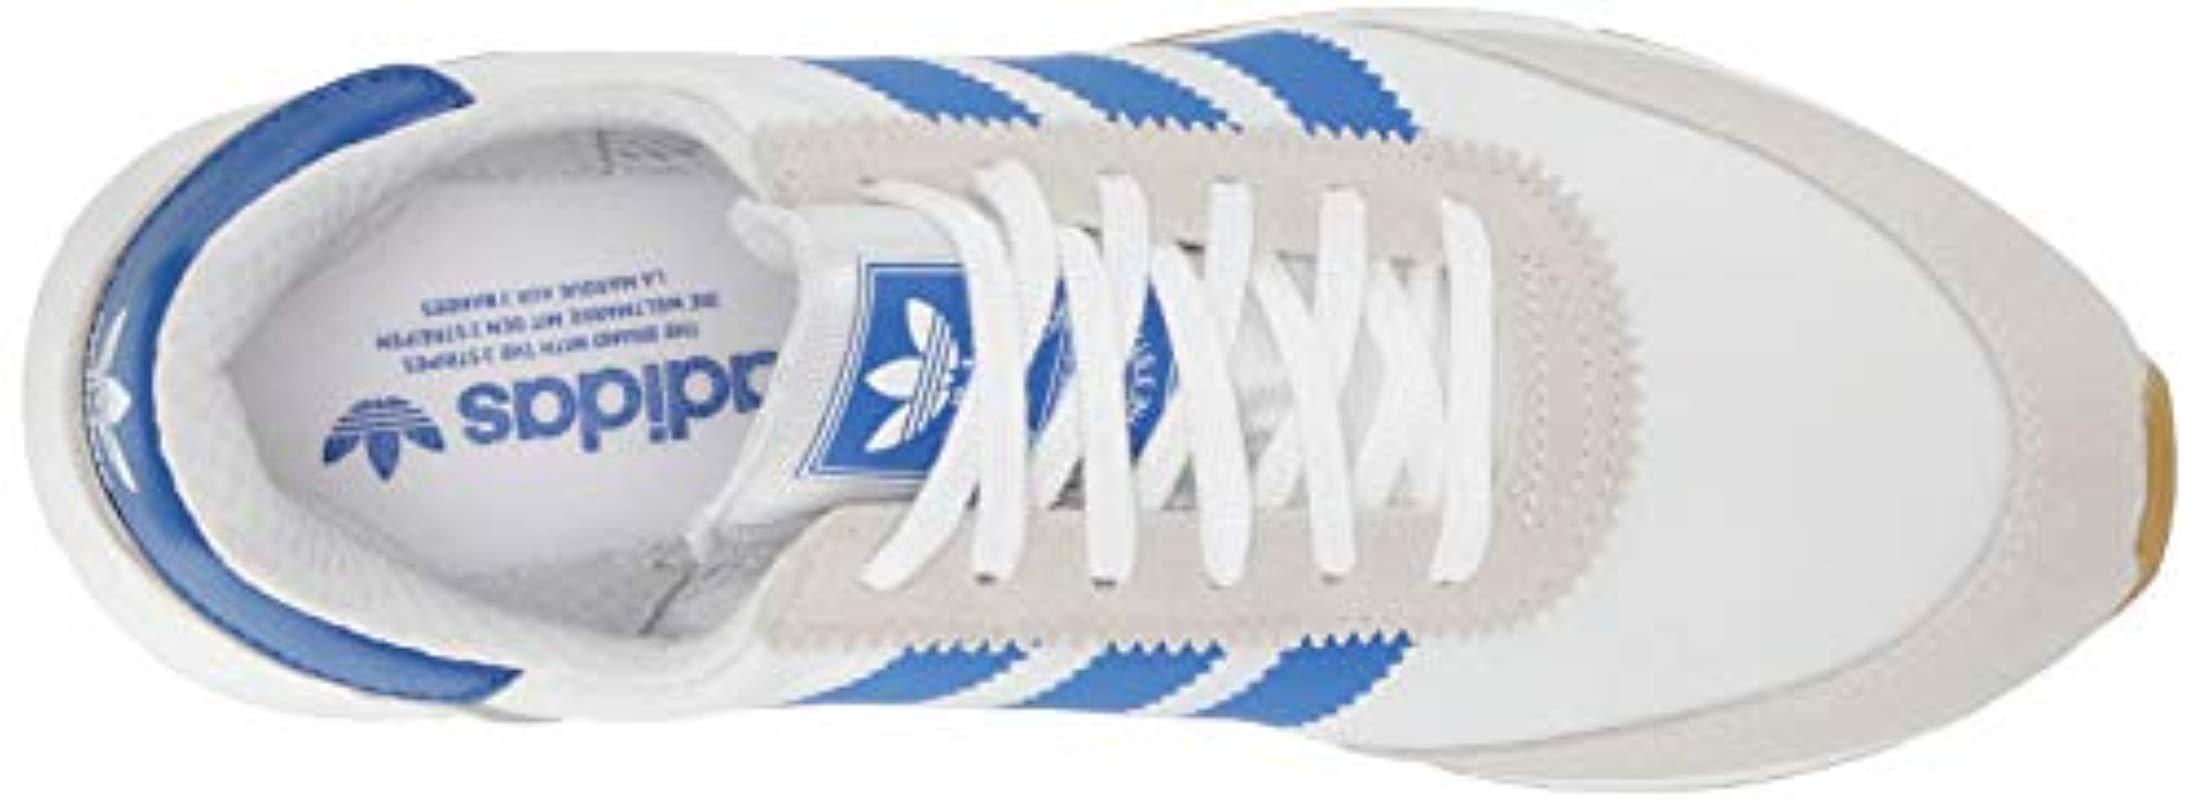 adidas Originals I-5923 Shoe, White/blue/gum, 9.5 M Us for Men | Lyst